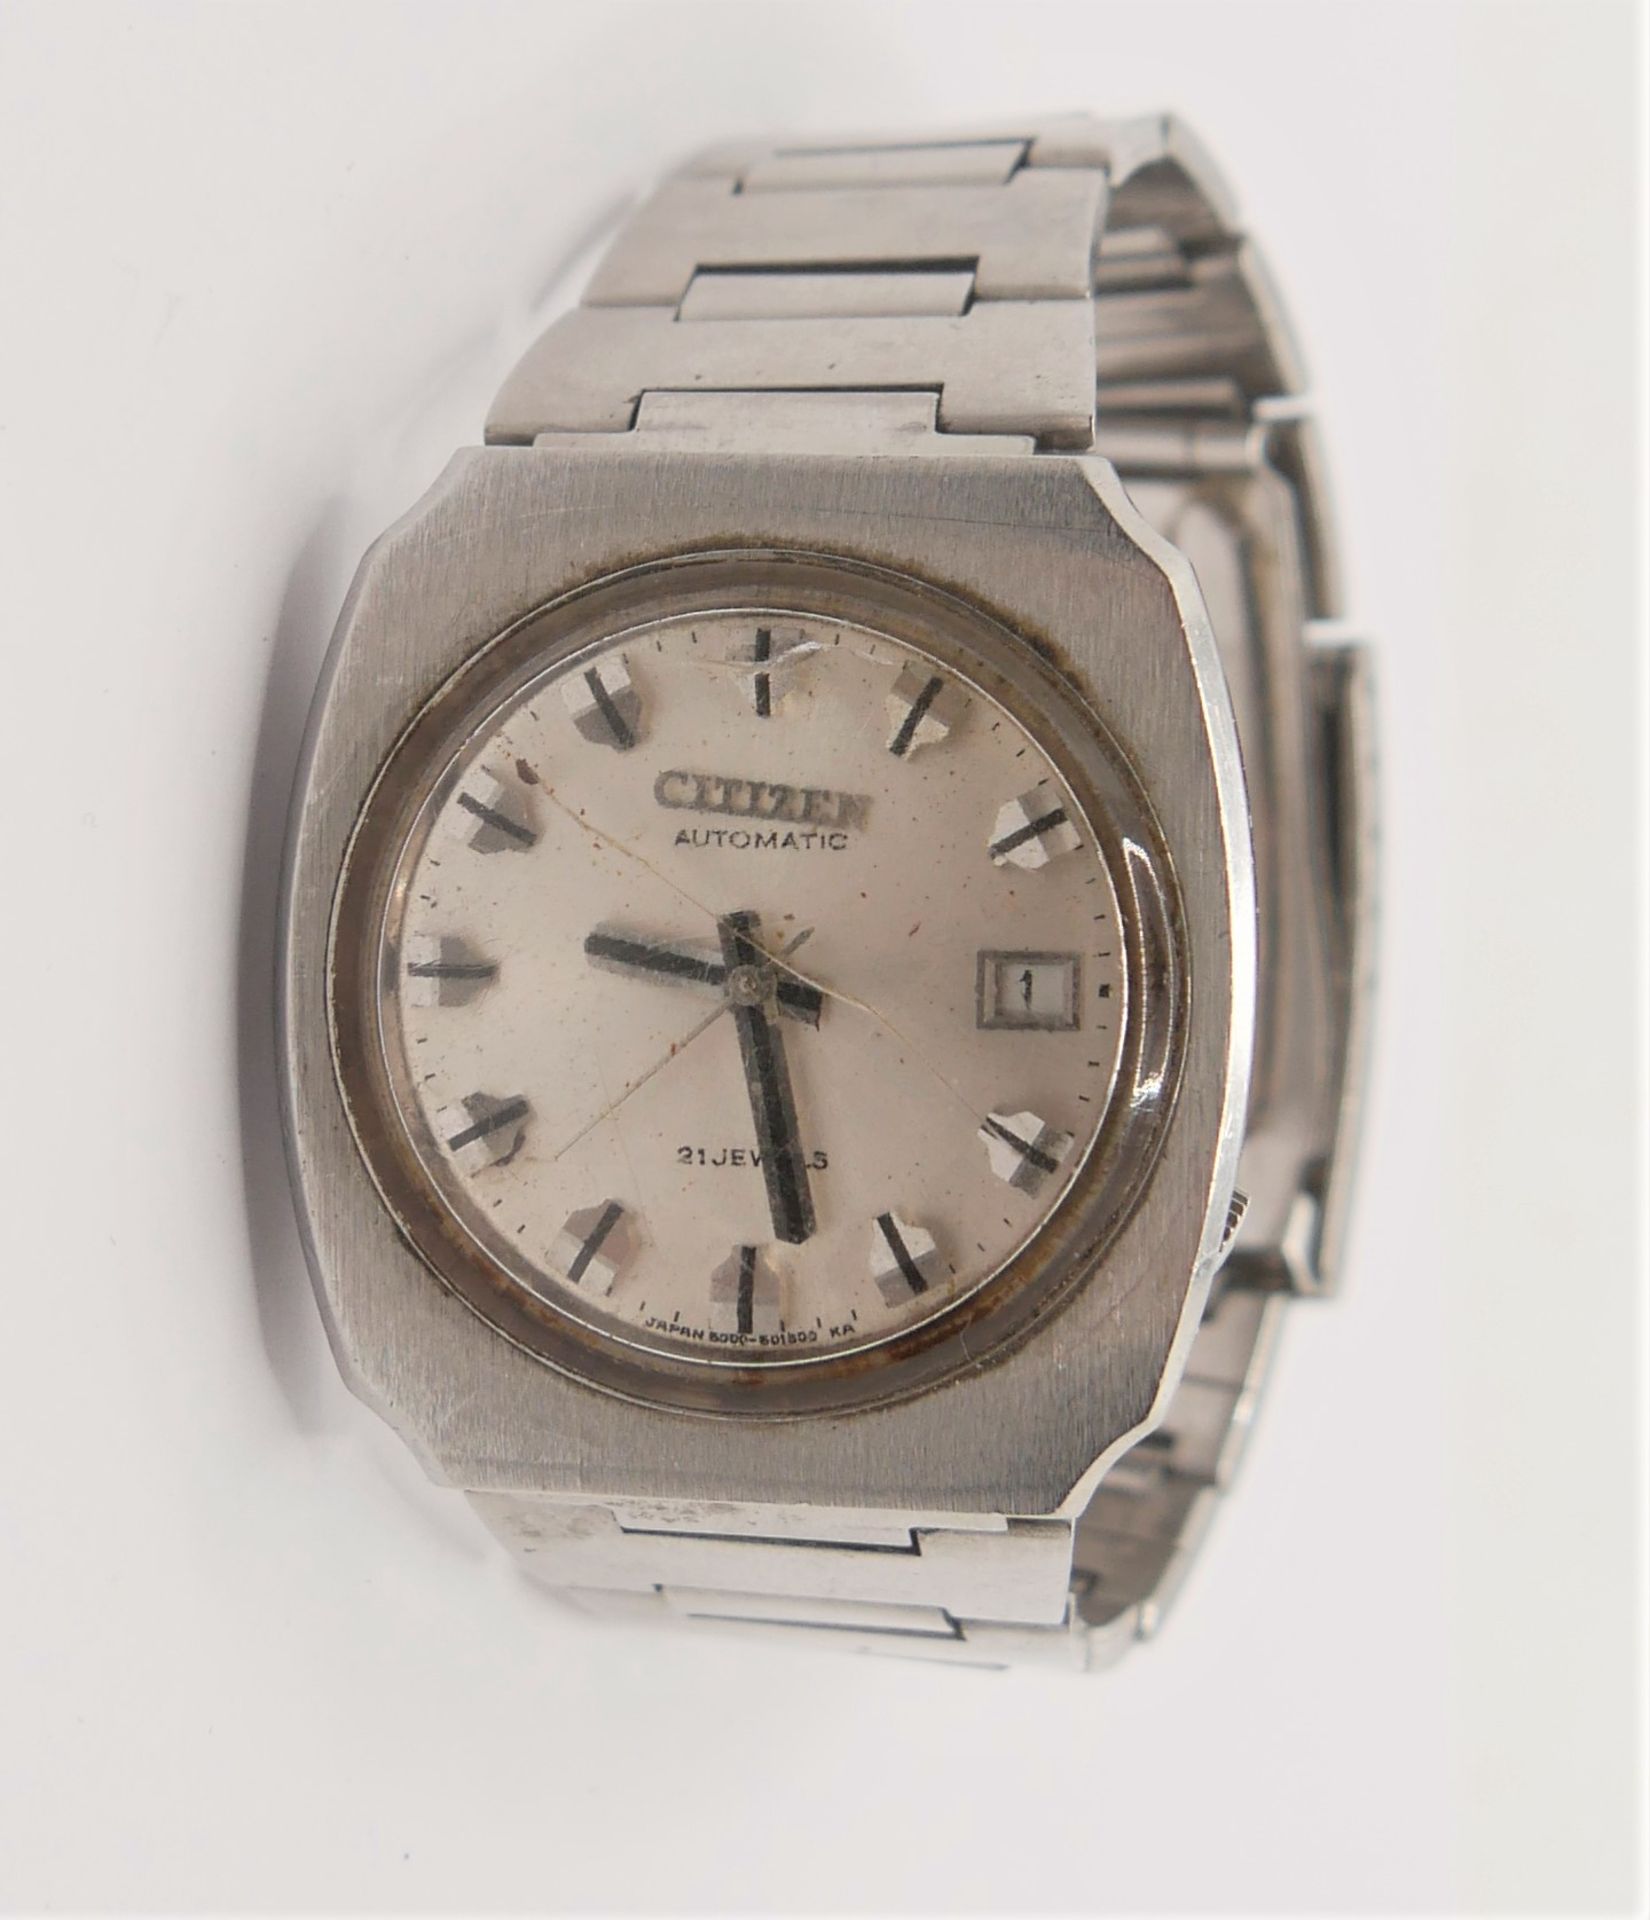 Herren-Armbanduhr, Citizen Automatic, mit Datumsanzeige, Glas gesprungen, Funktion nicht geprüft. - Bild 2 aus 2